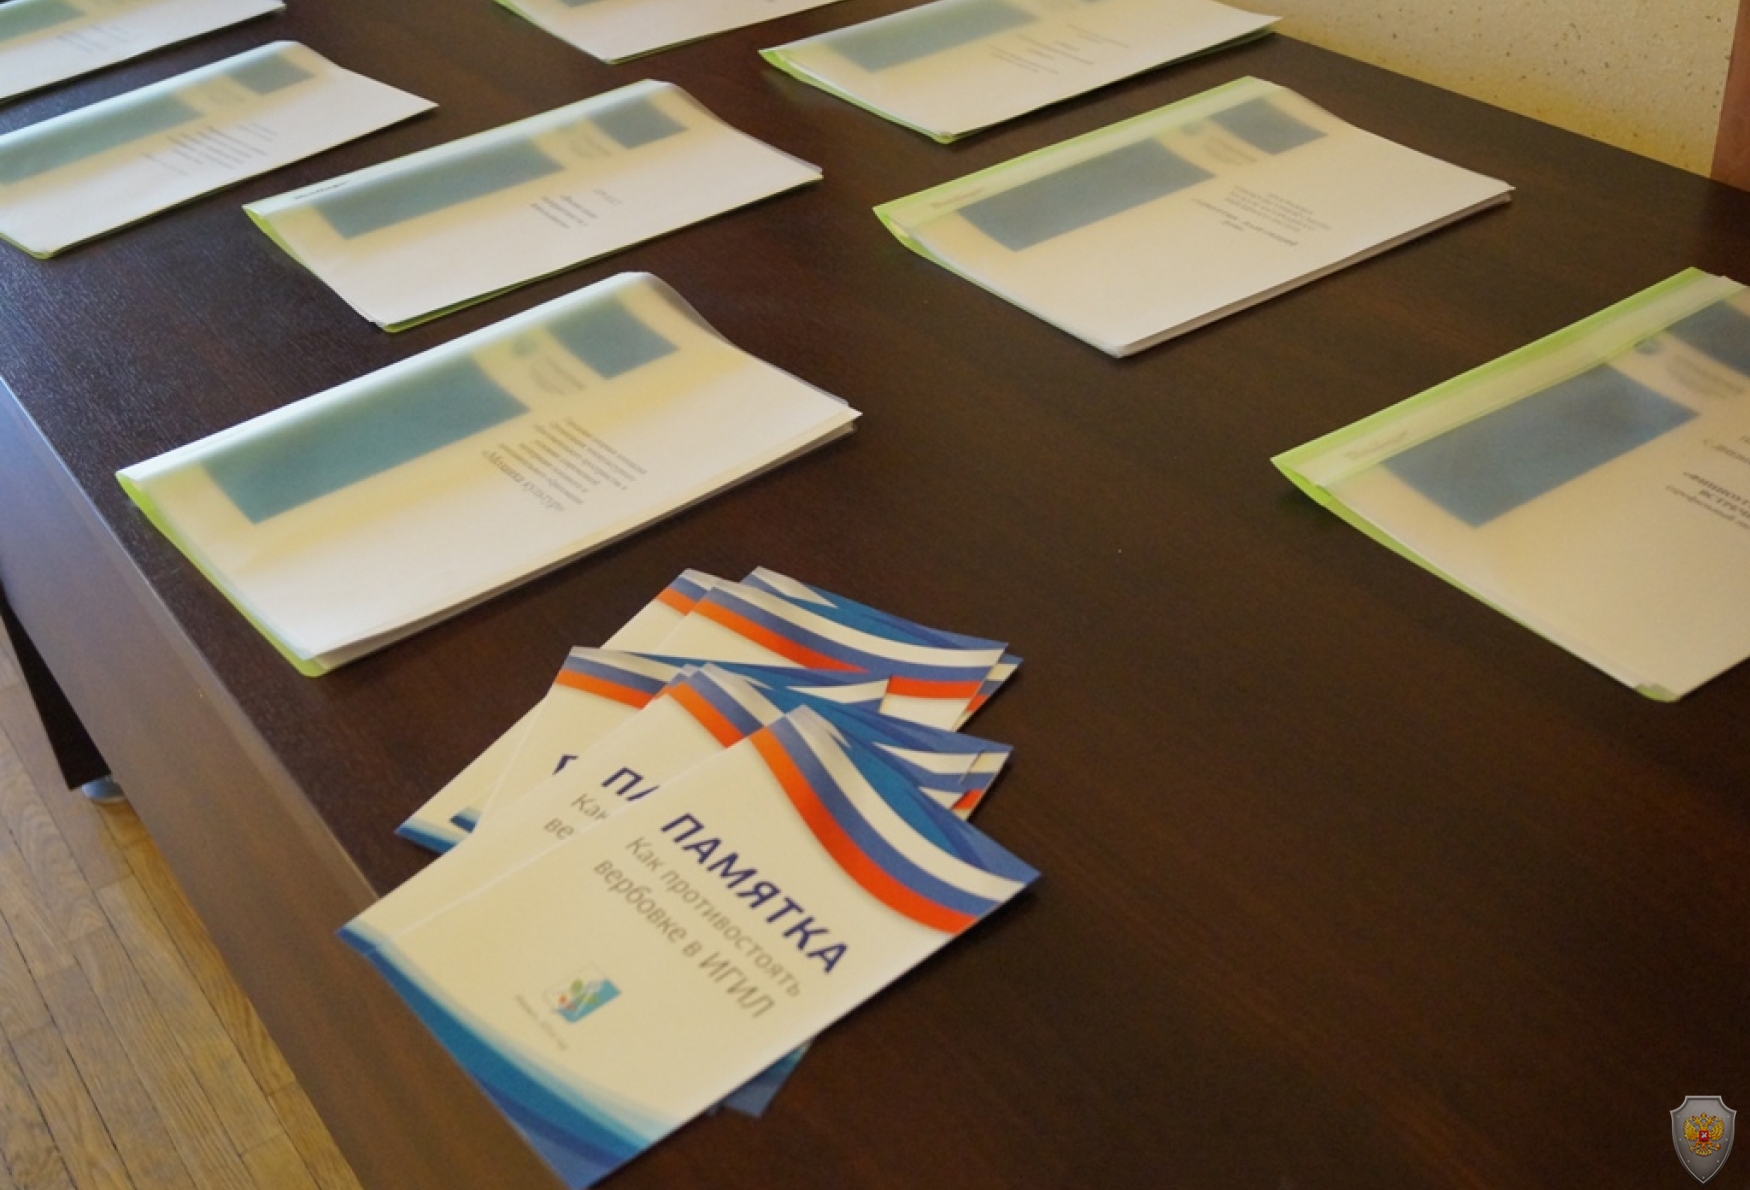 Раздаточный материал участникам совместного заседания АТК и ОШ в Удмуртской Республике, приглашённым.